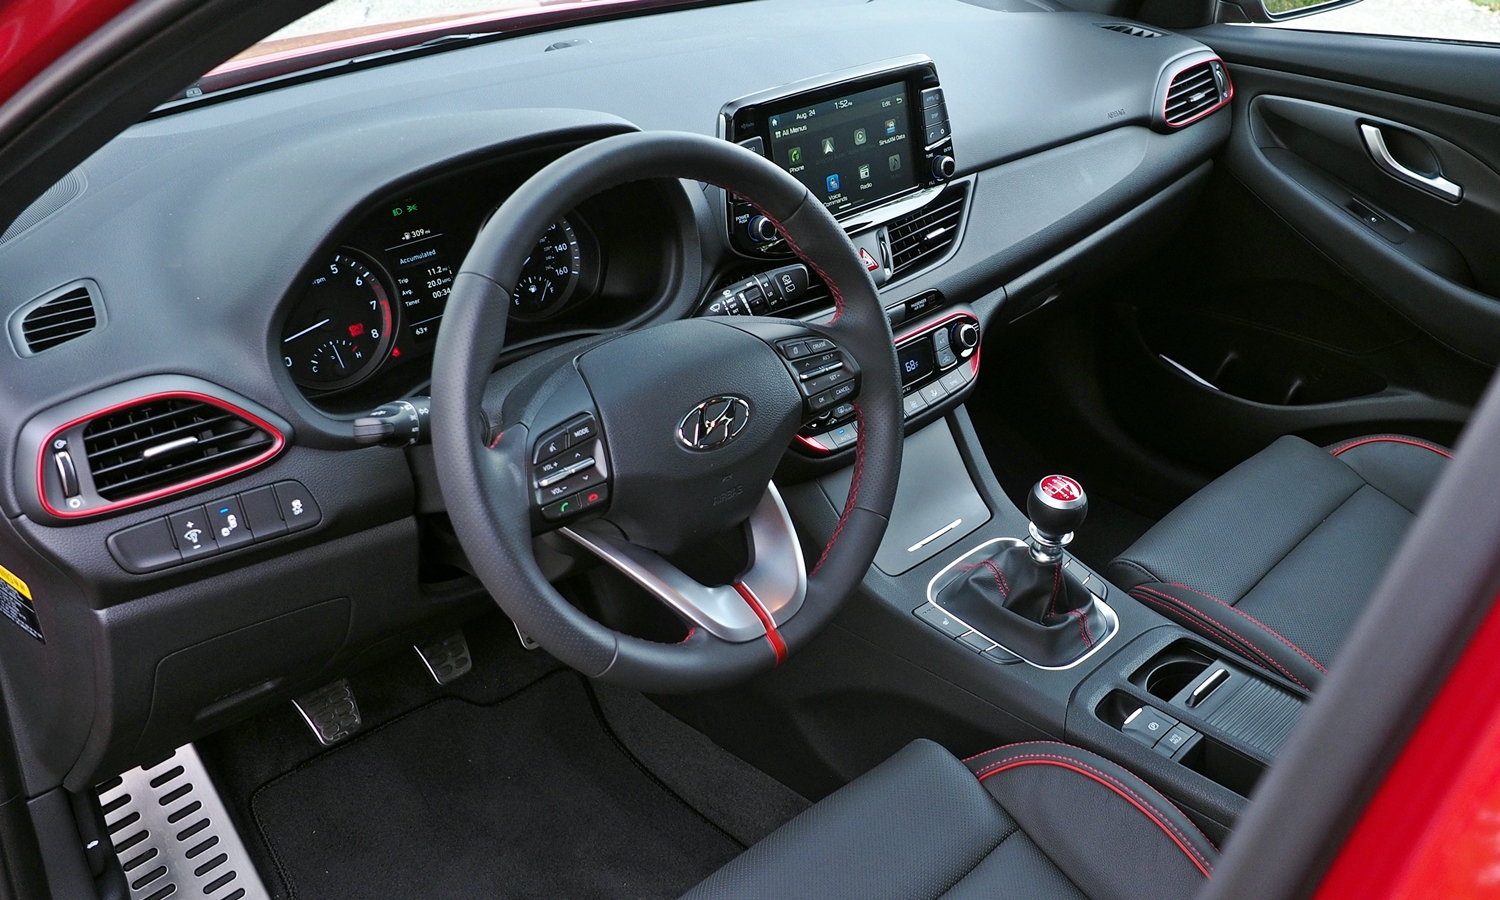 Elantra GT Reviews: Hyundai Elantra GT interior